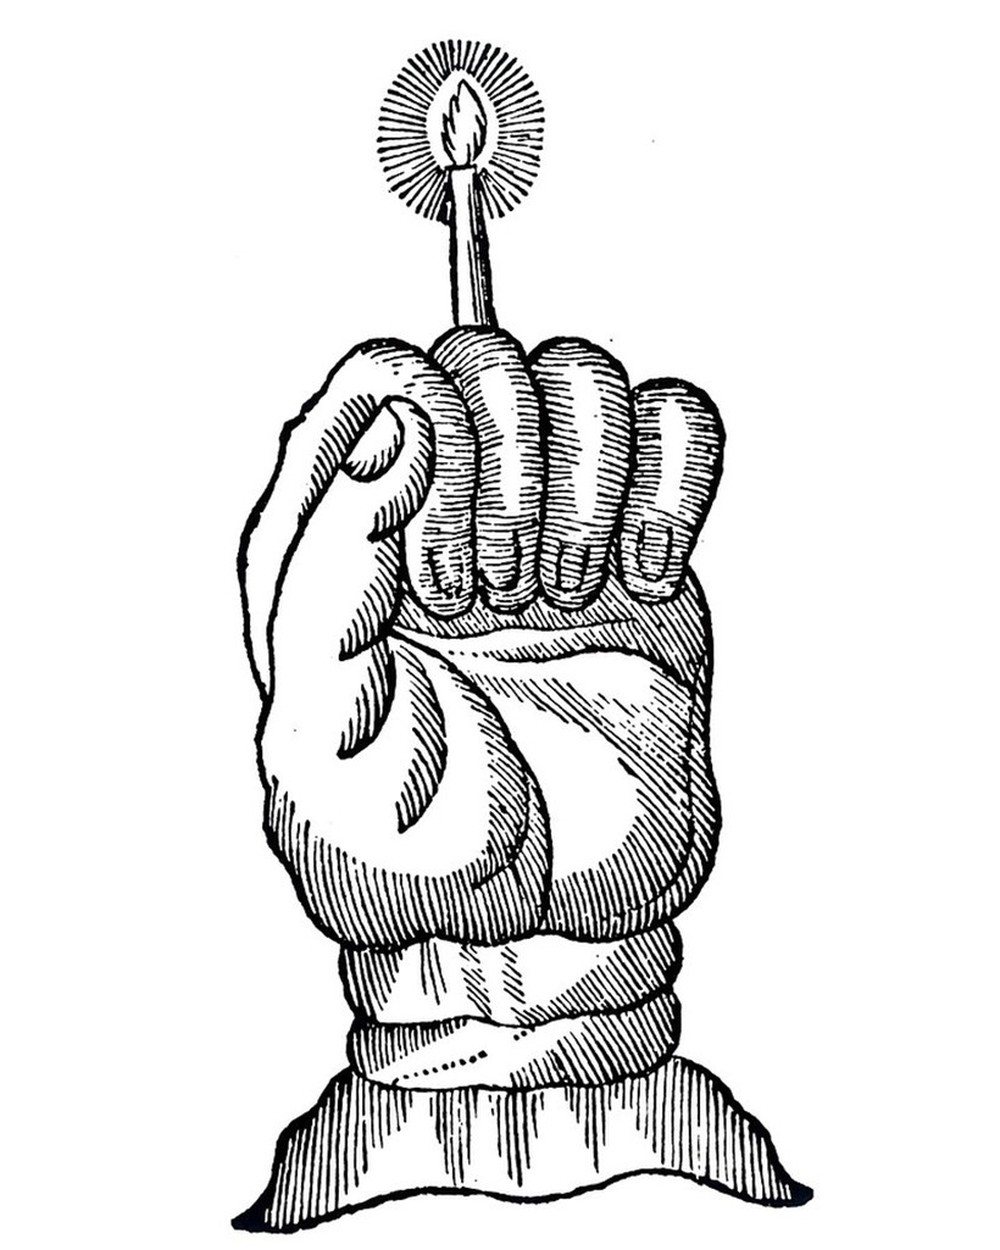 Truyền thuyết về bàn tay vinh quang - Ảnh 1.